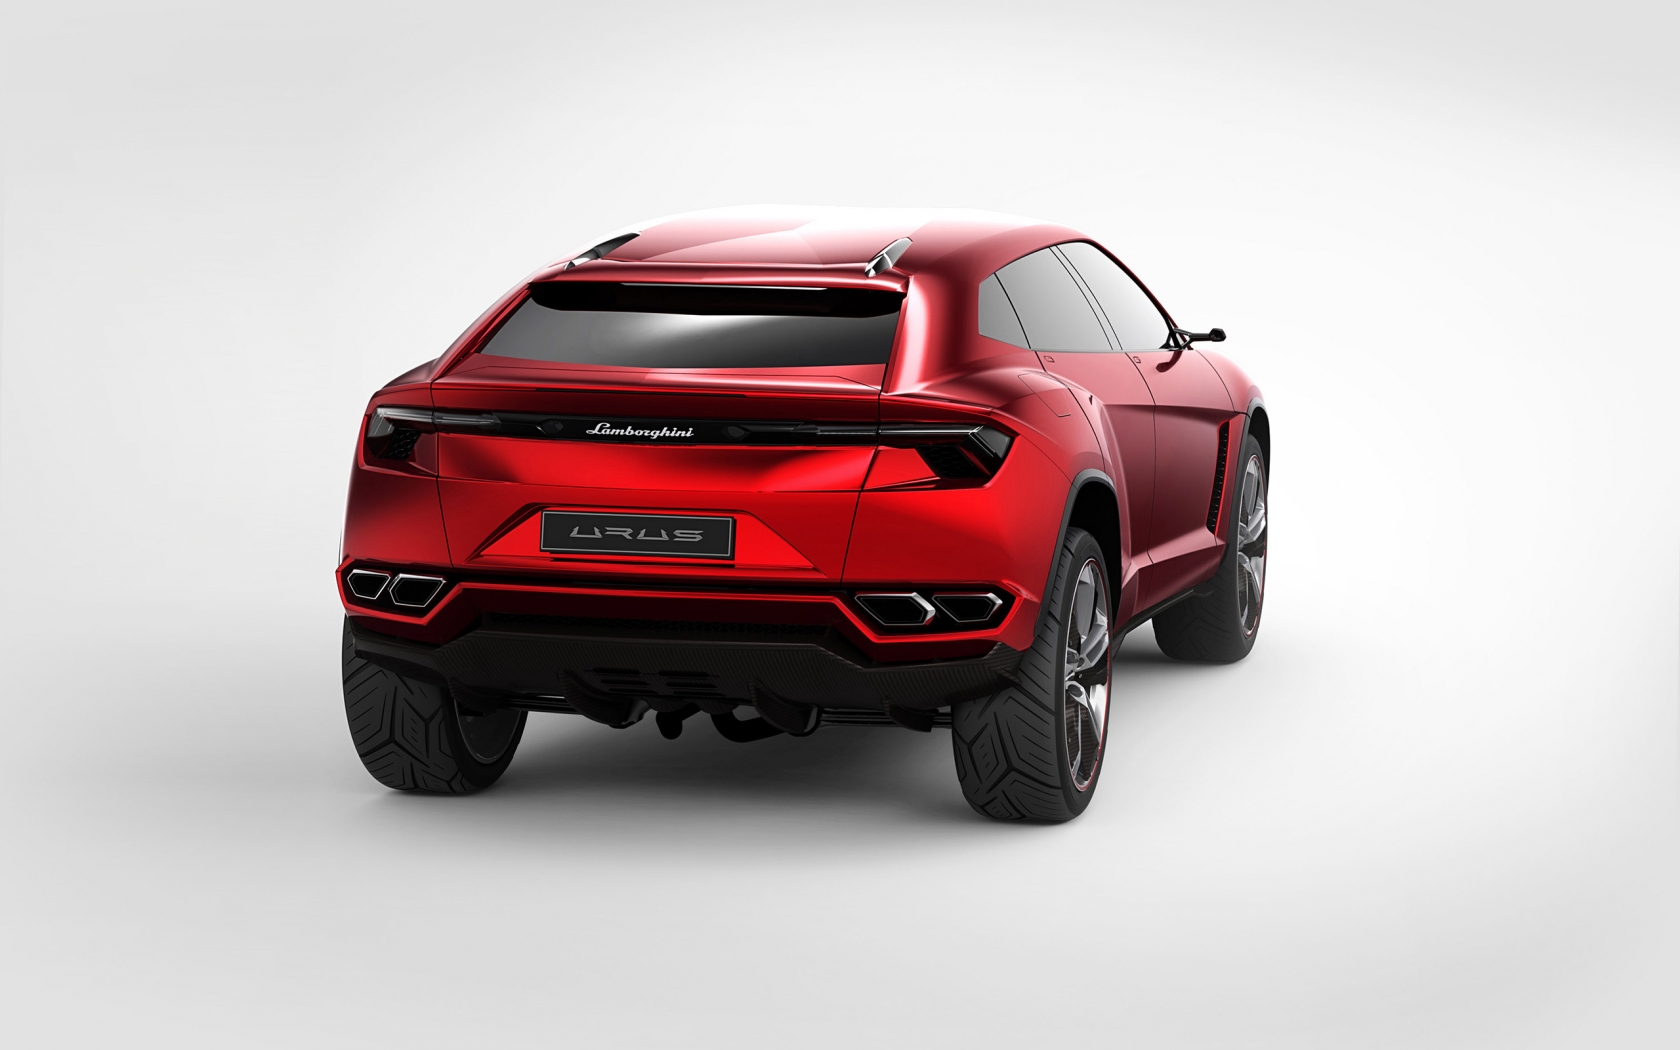 Lamborghini Urus Concept Rear Studio for 1680 x 1050 widescreen resolution